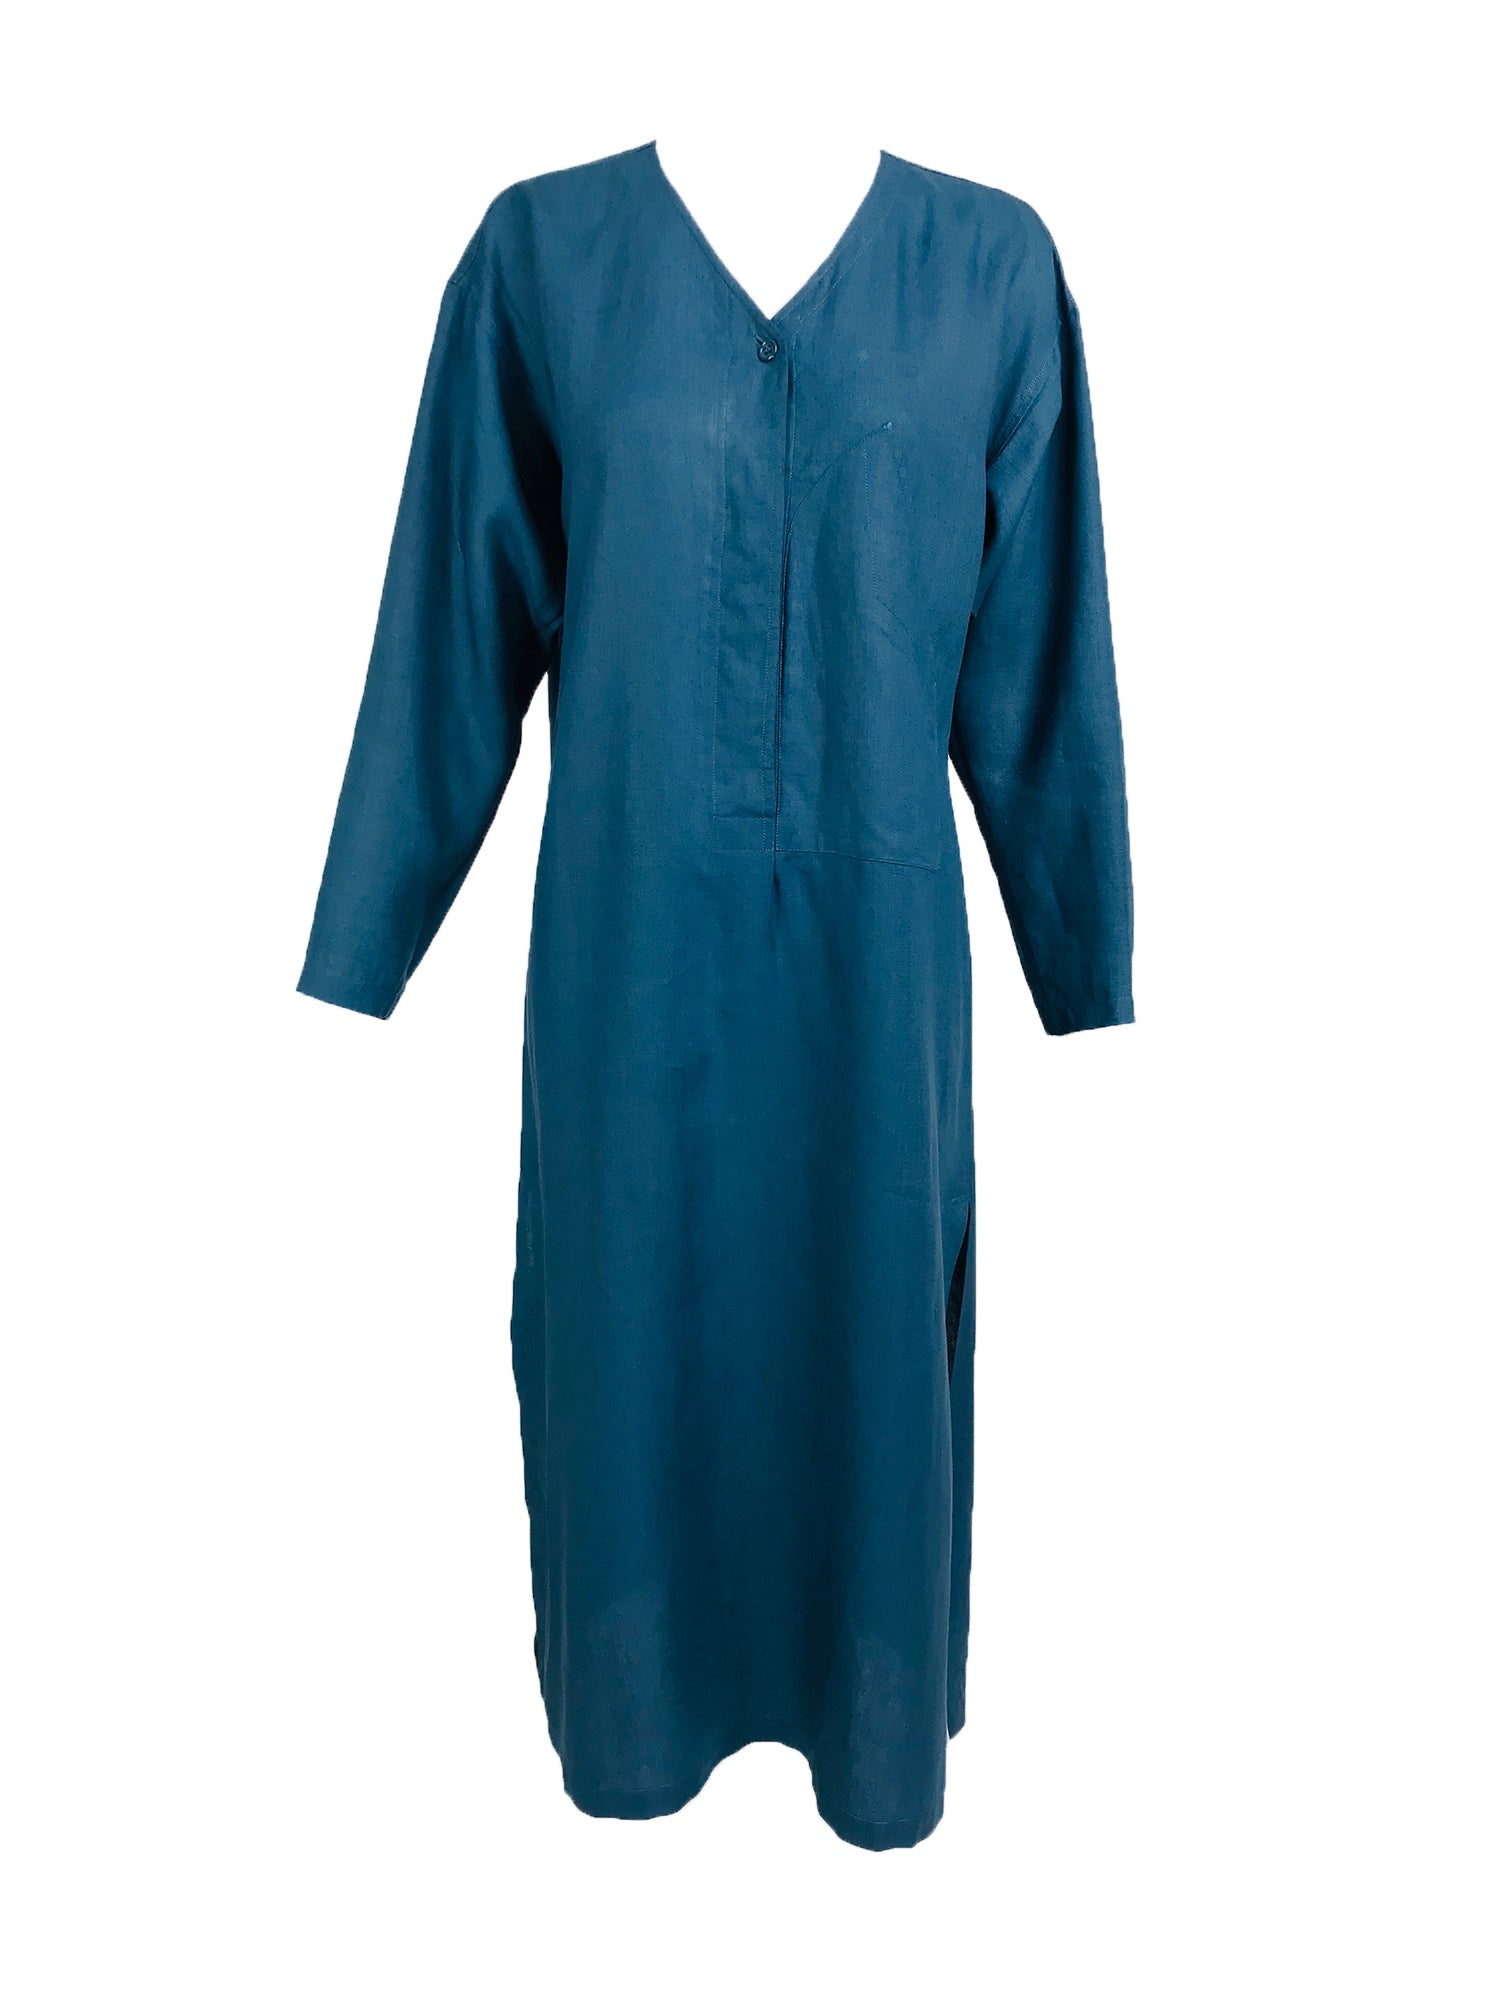 teal linen dress